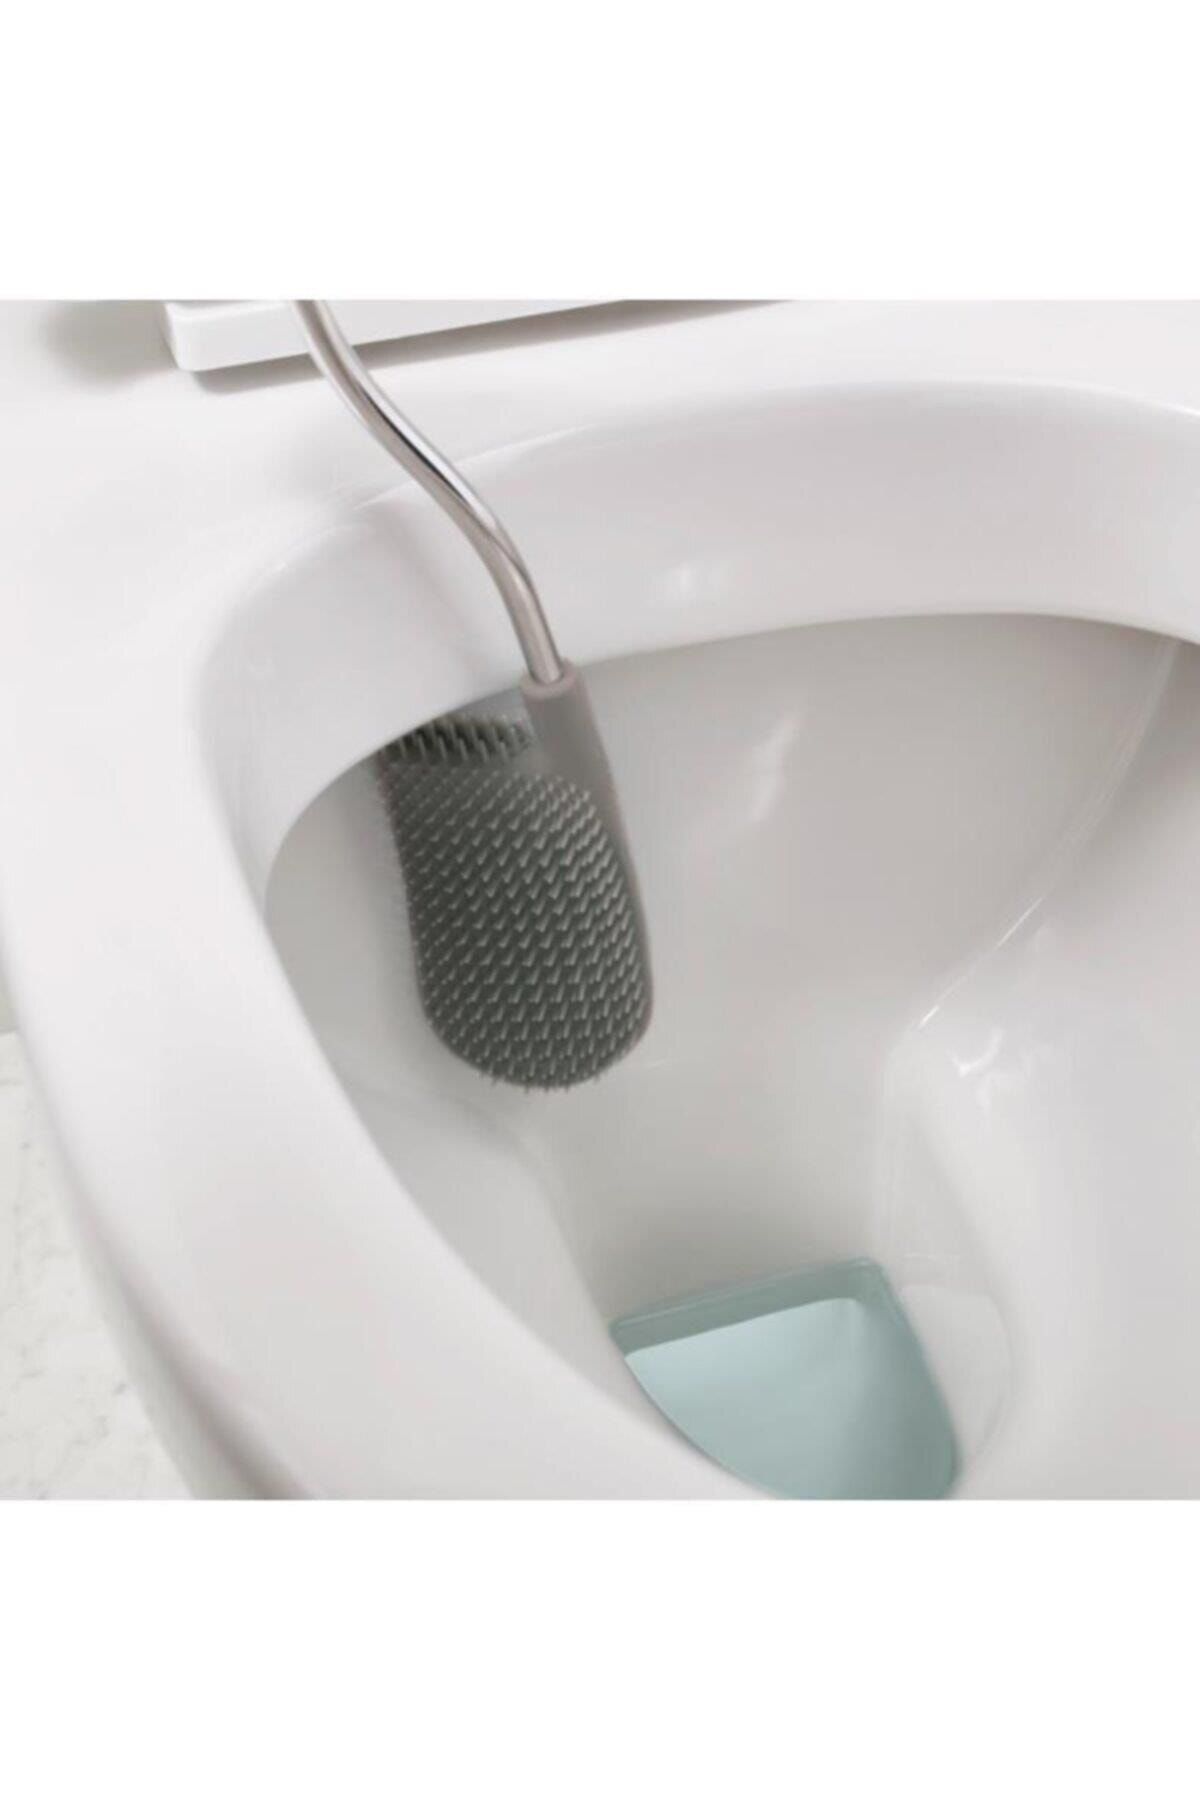 Joseph Joseph Flex™ Smart Tuvalet Fırçası - Paslanmaz Çelik